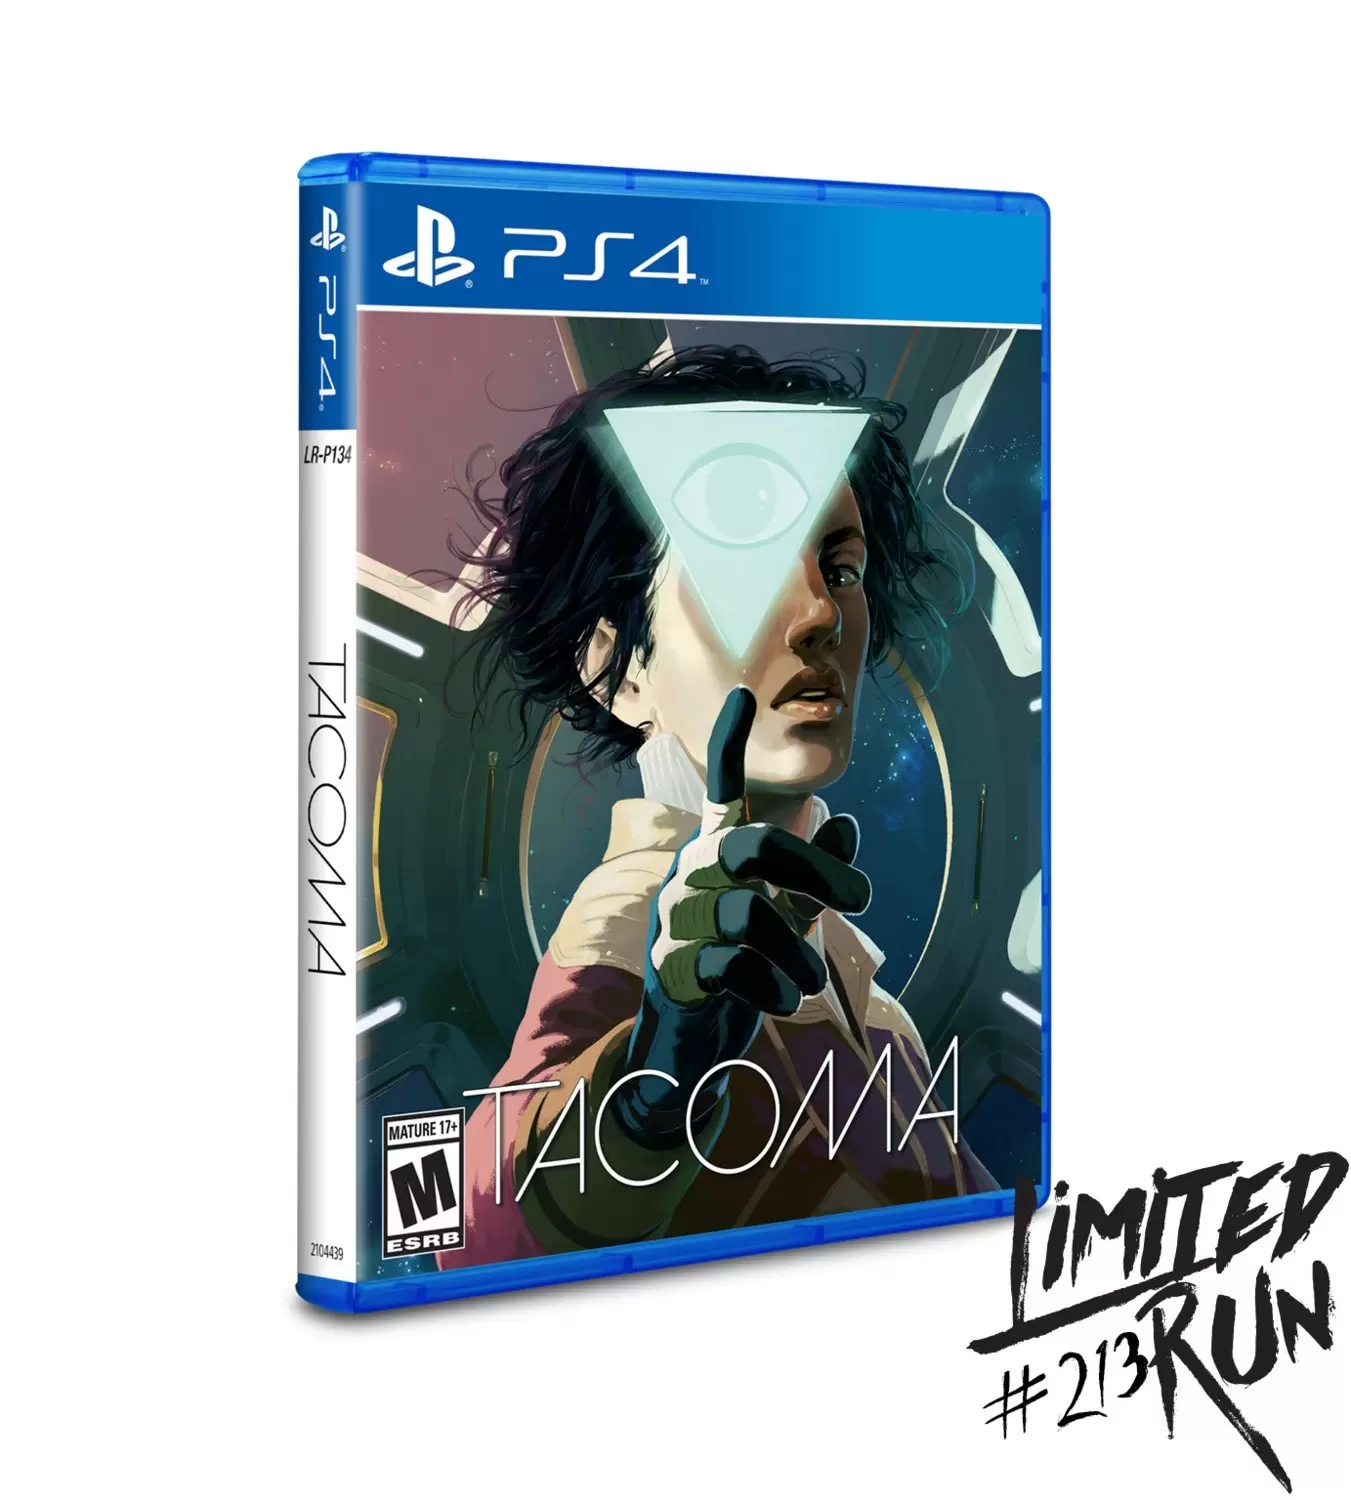 PS4 Games - Tacoma